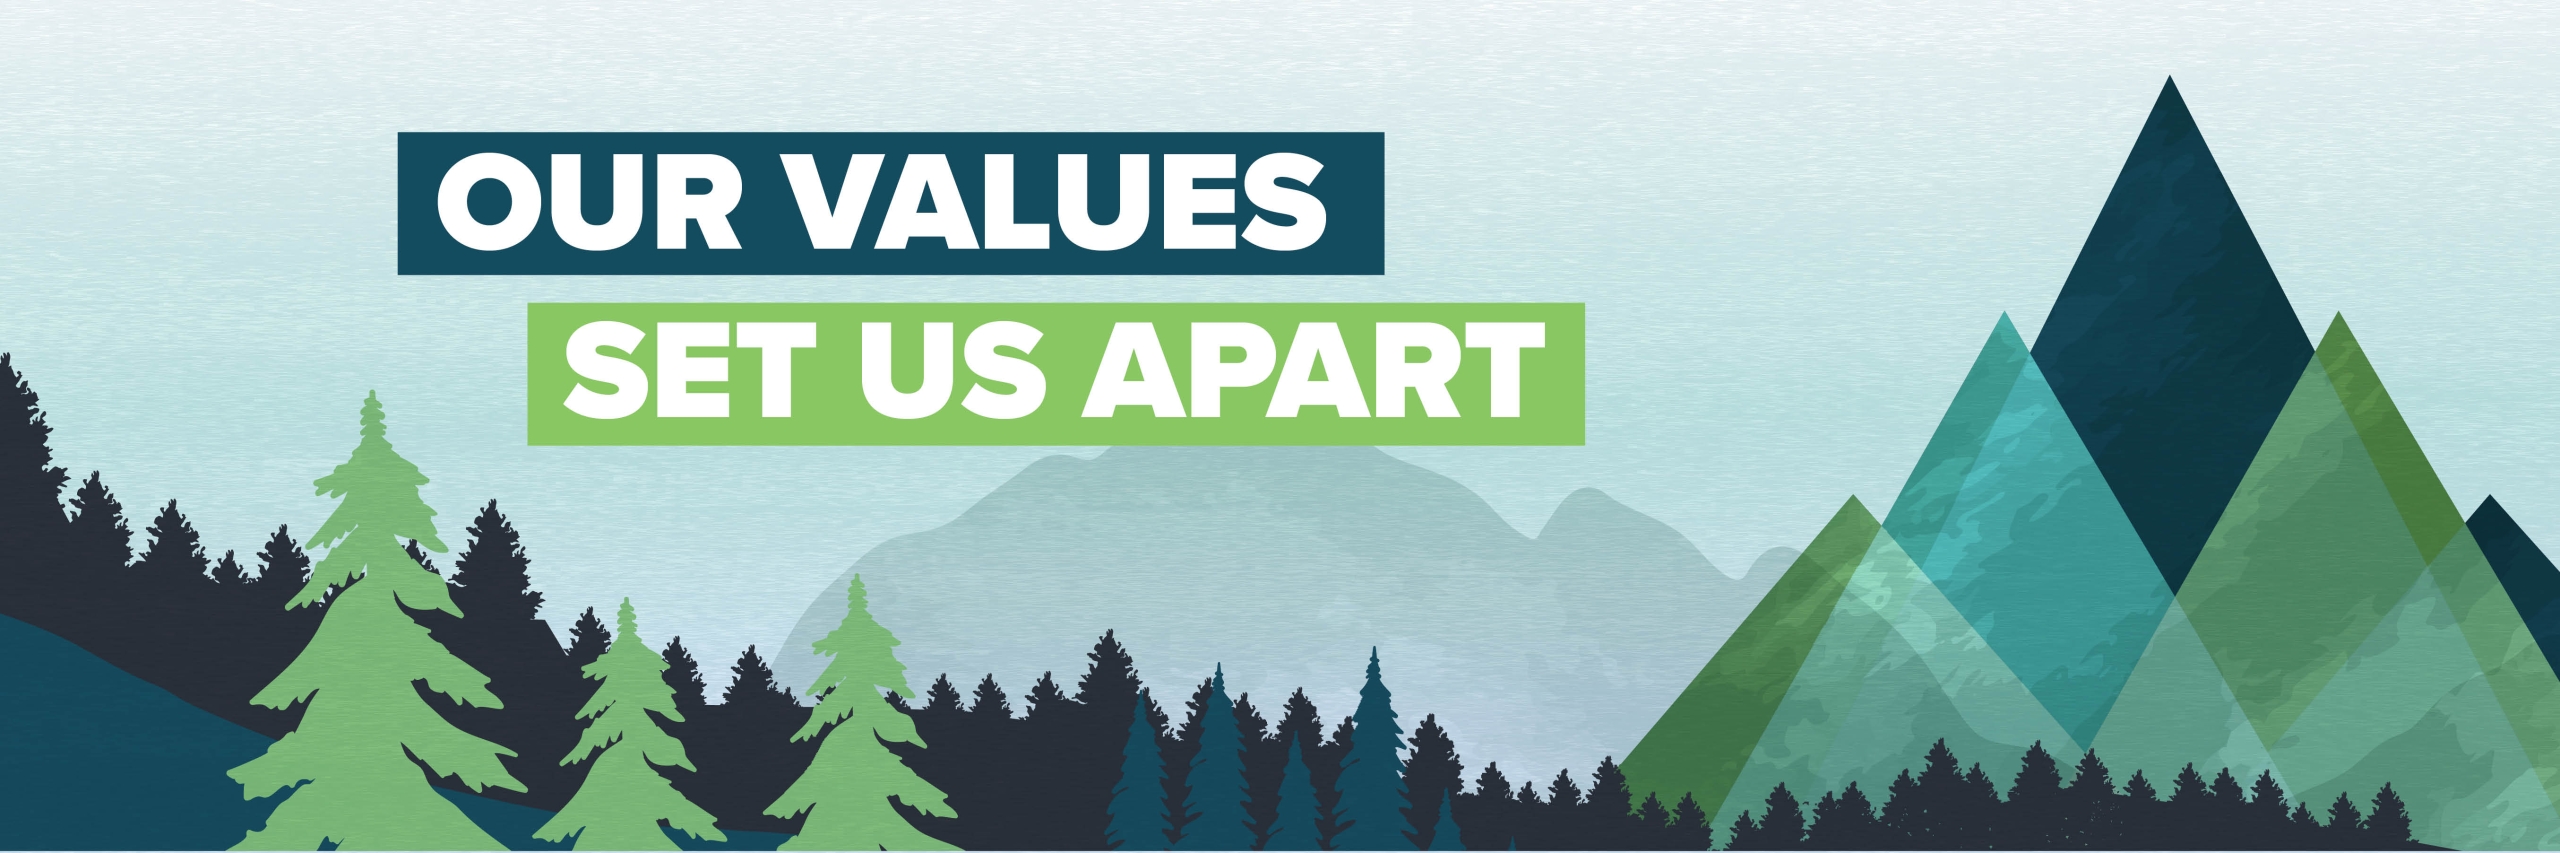 "our values set us apart"